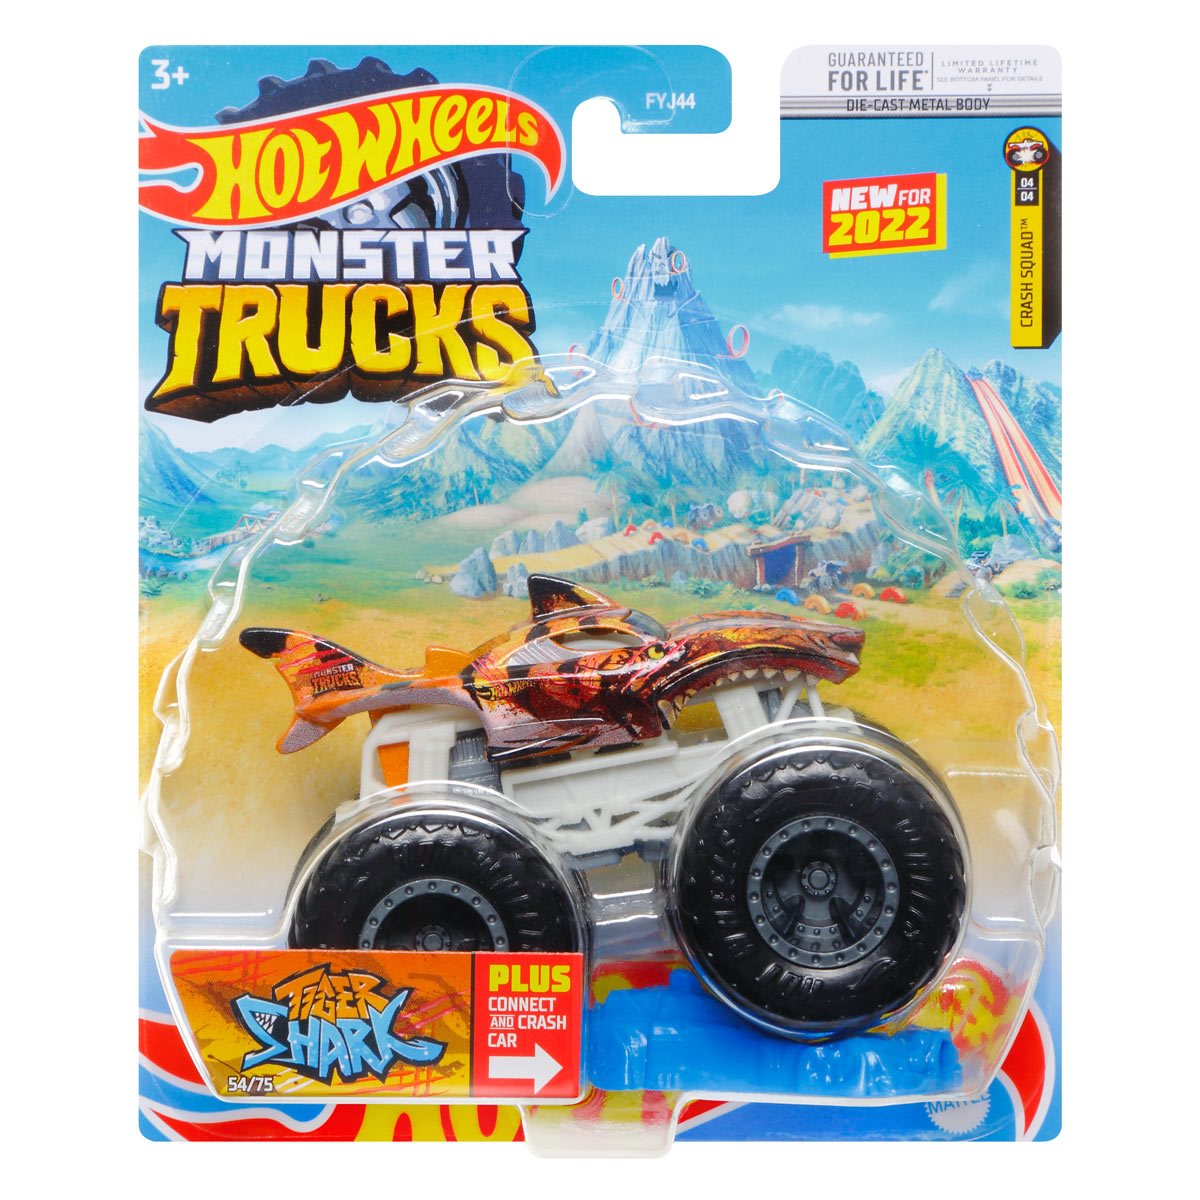 Hot Wheels Monster Trucks Live 8-Pack, Toy Trucks, Gift for Kids 3